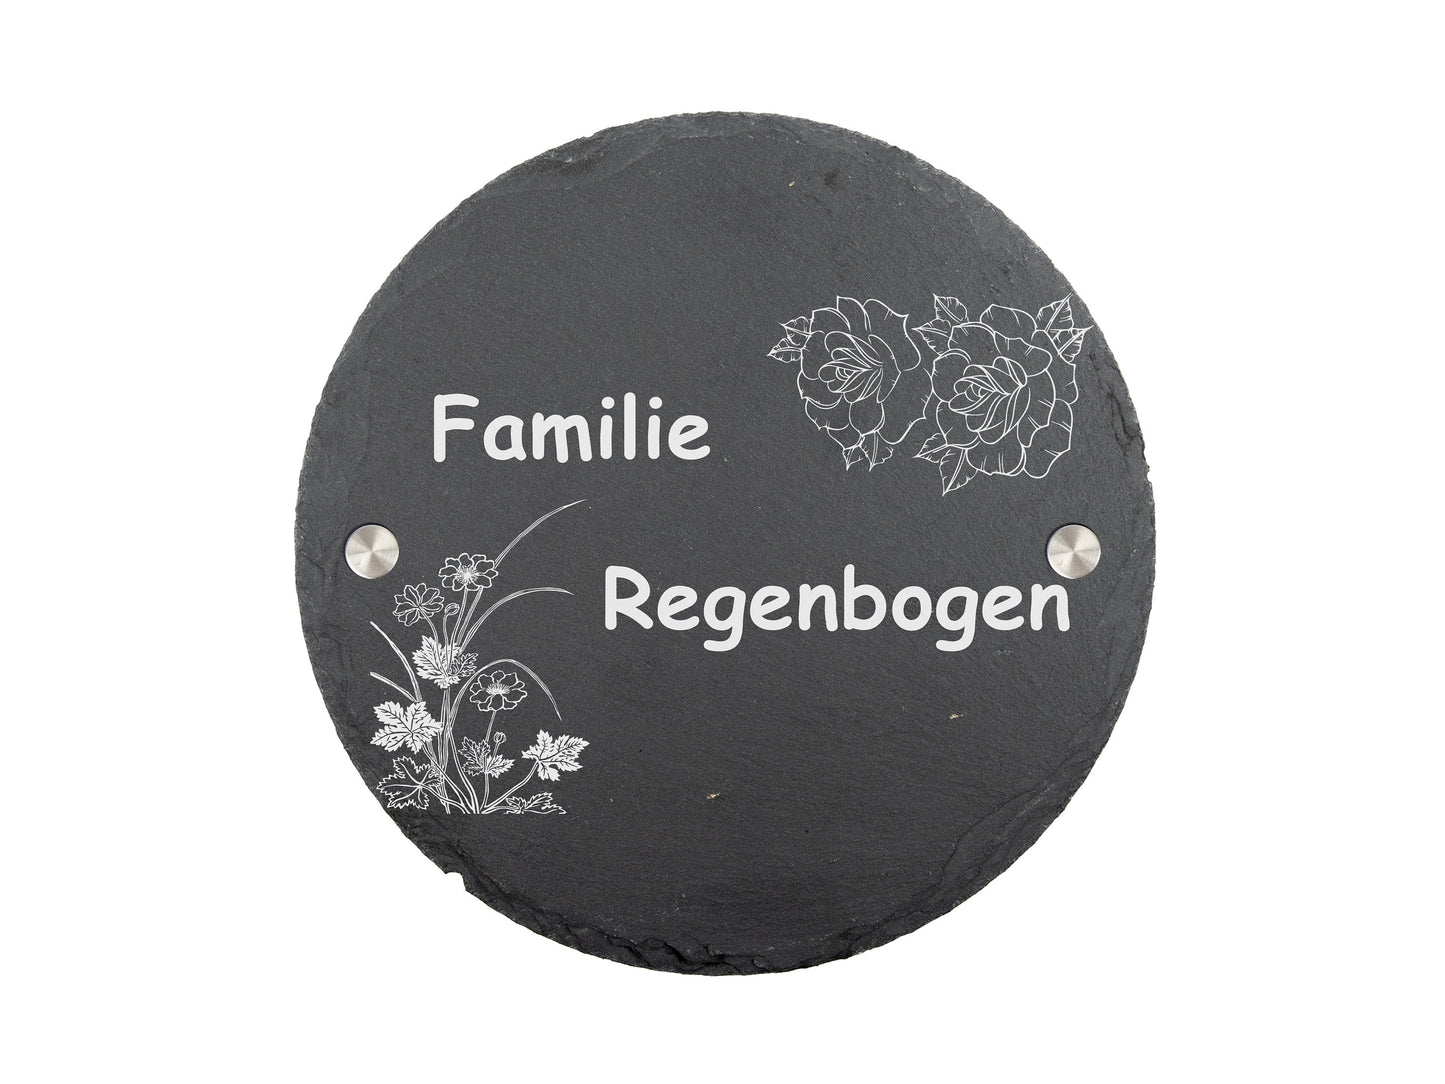 Stoamandal Türschild rund mit personalisierter Gravur - Schiefer - Familie Regenbogen - mit Abstandhalter